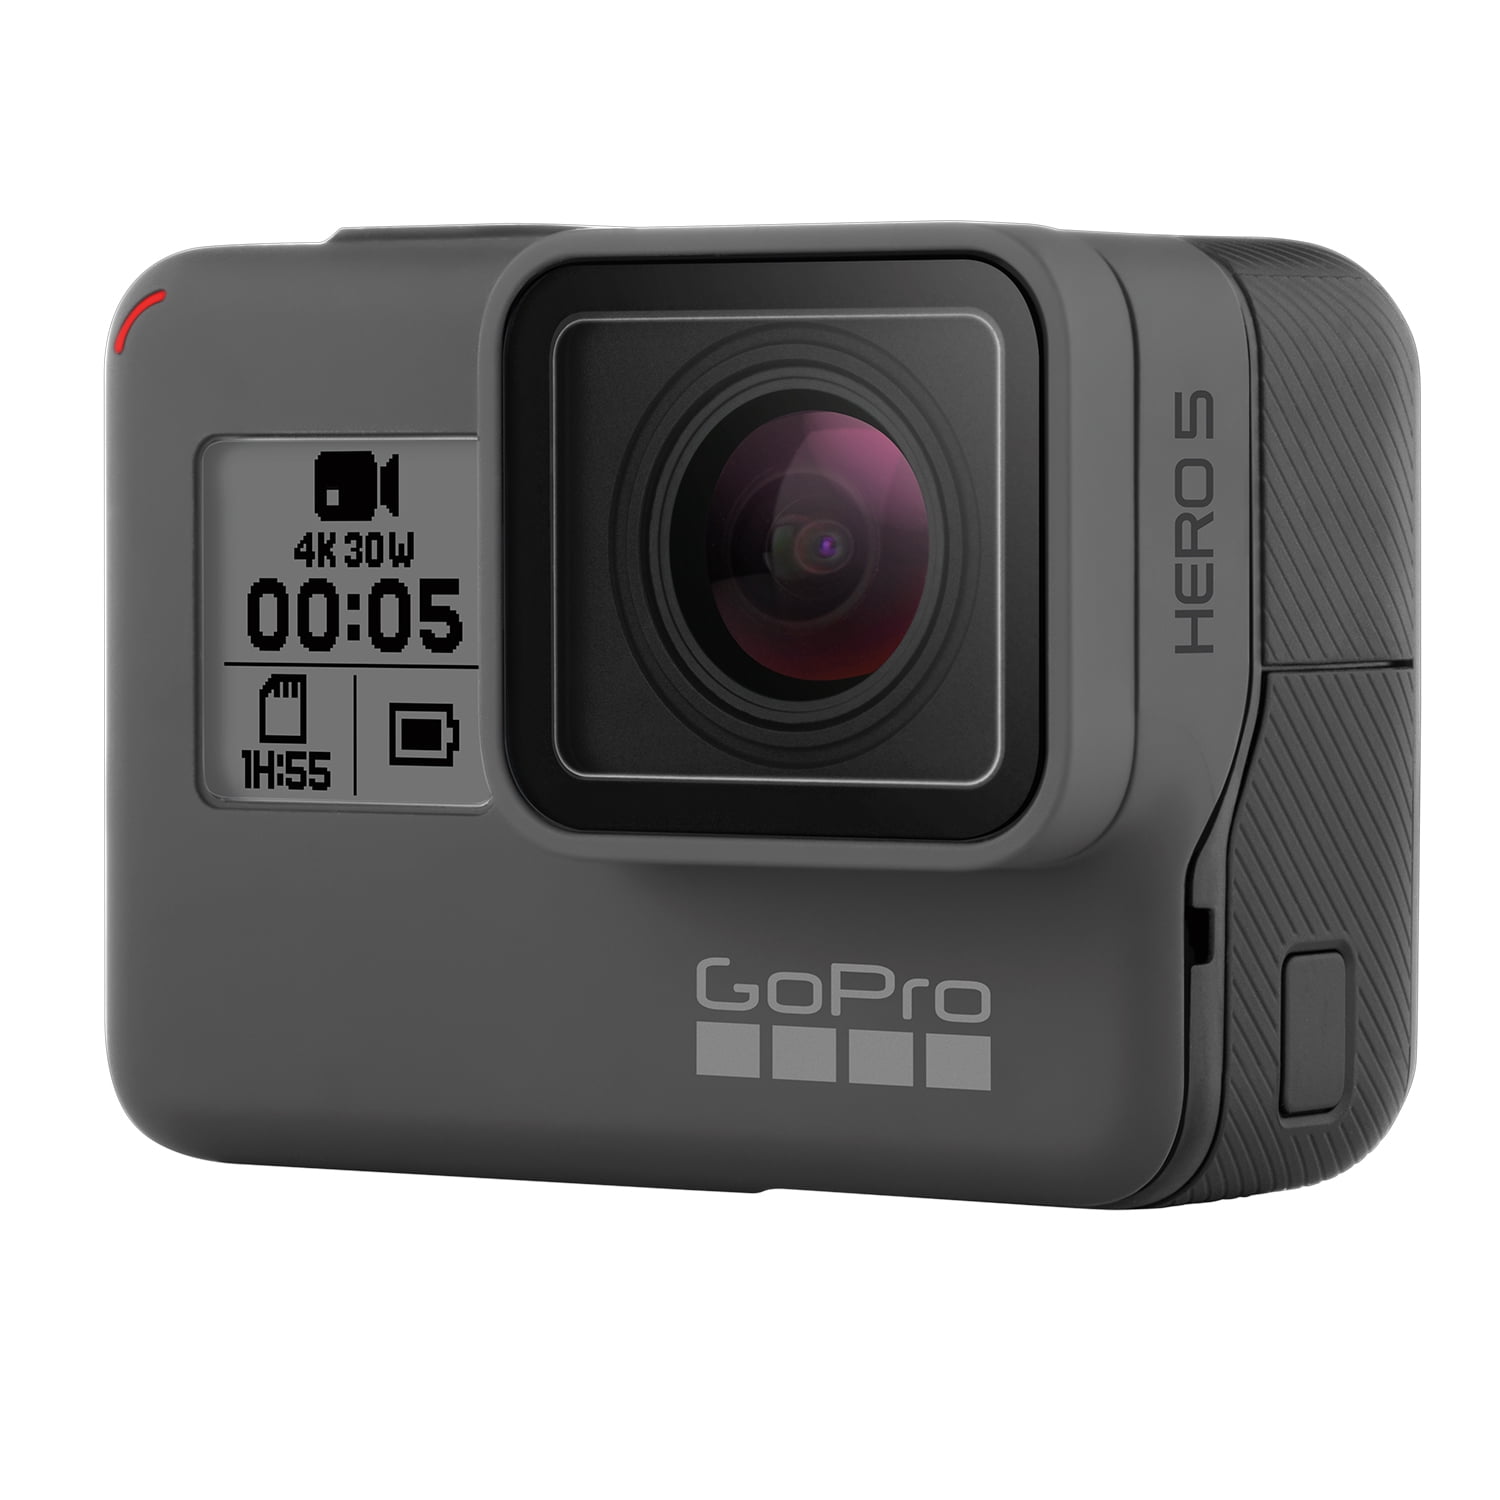 GoPro Hero5 Black â€” Waterproof Digital Action Camera for Travel